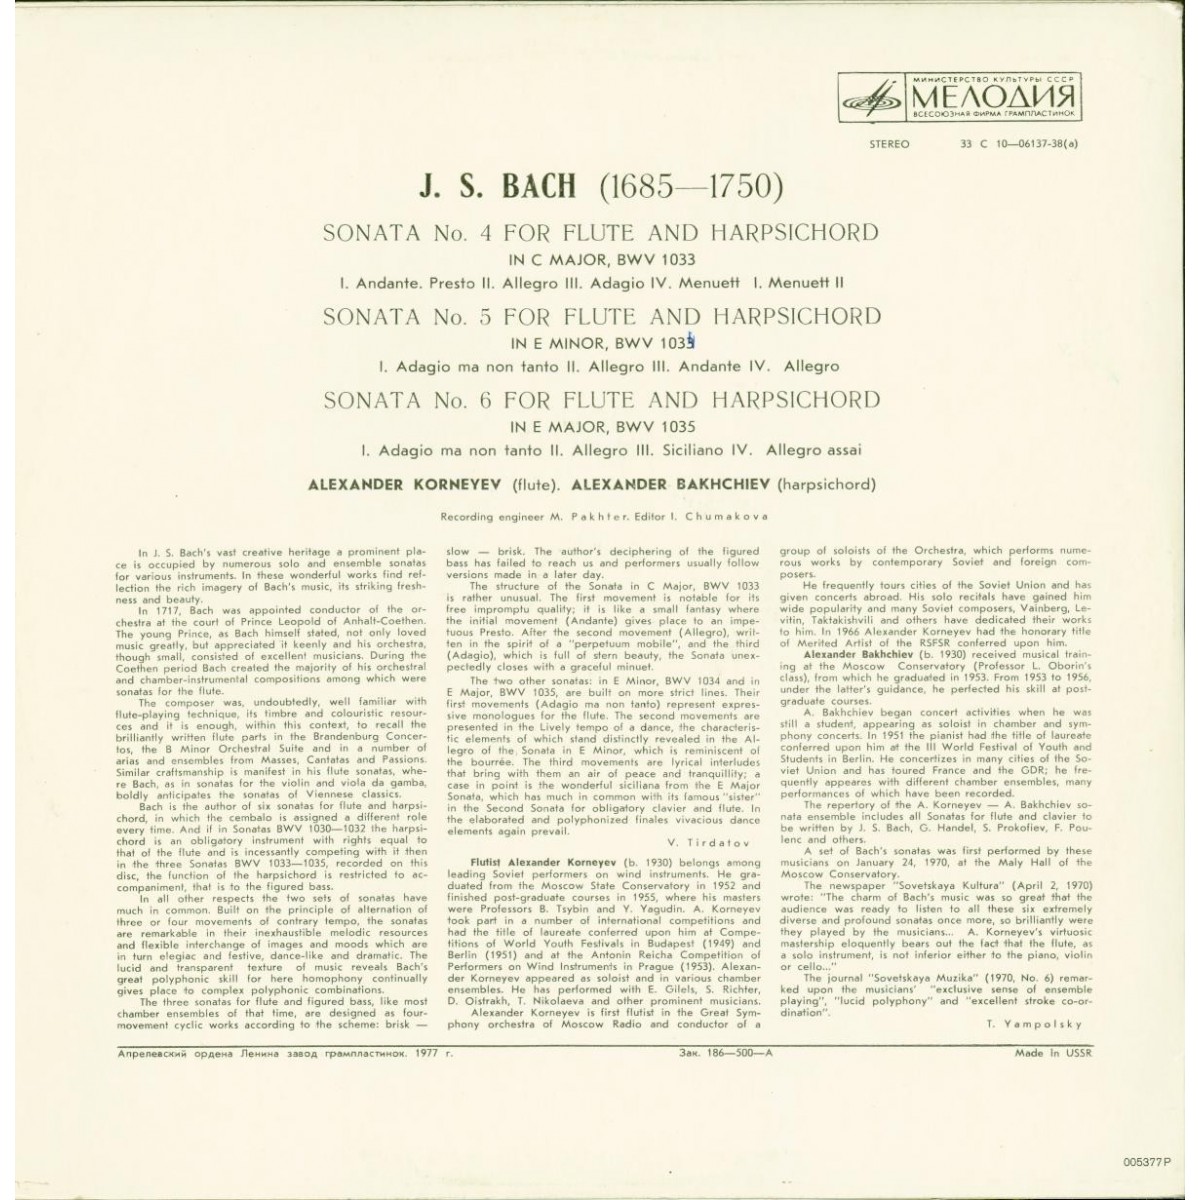 И. С. БАХ (1685-1750): Сонаты №№ 4-6 для флейты и клавесина